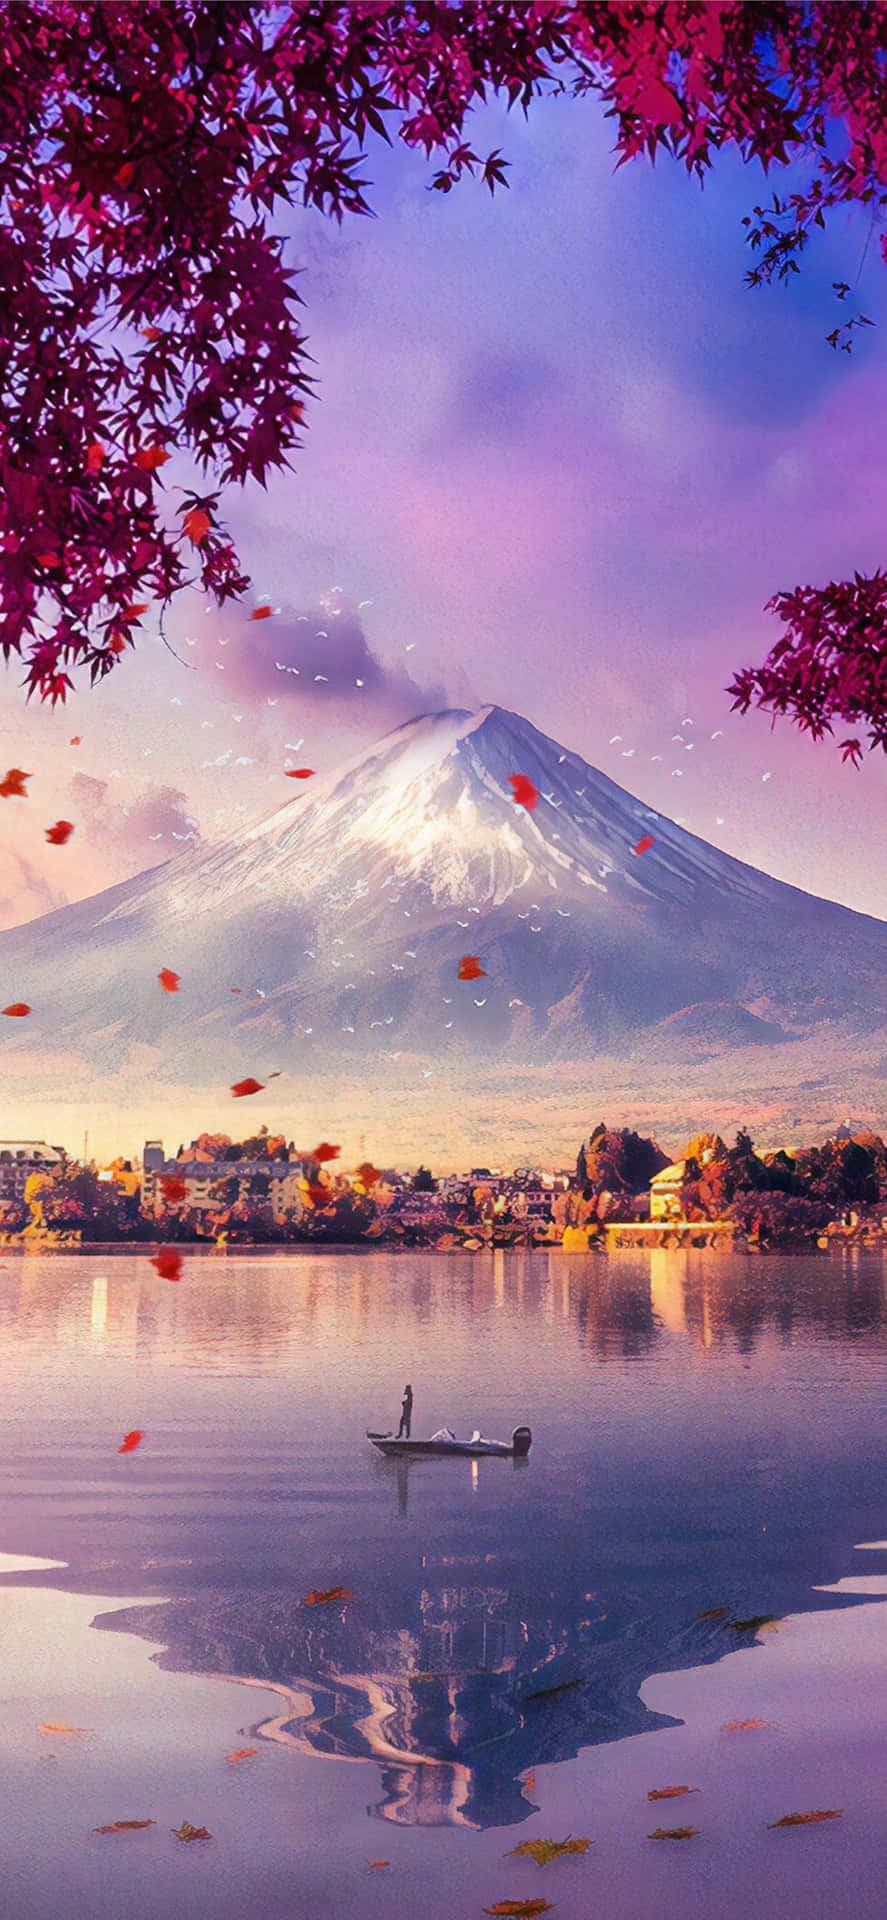 Fuji Peak With Lake And Falling Leaves Wallpaper